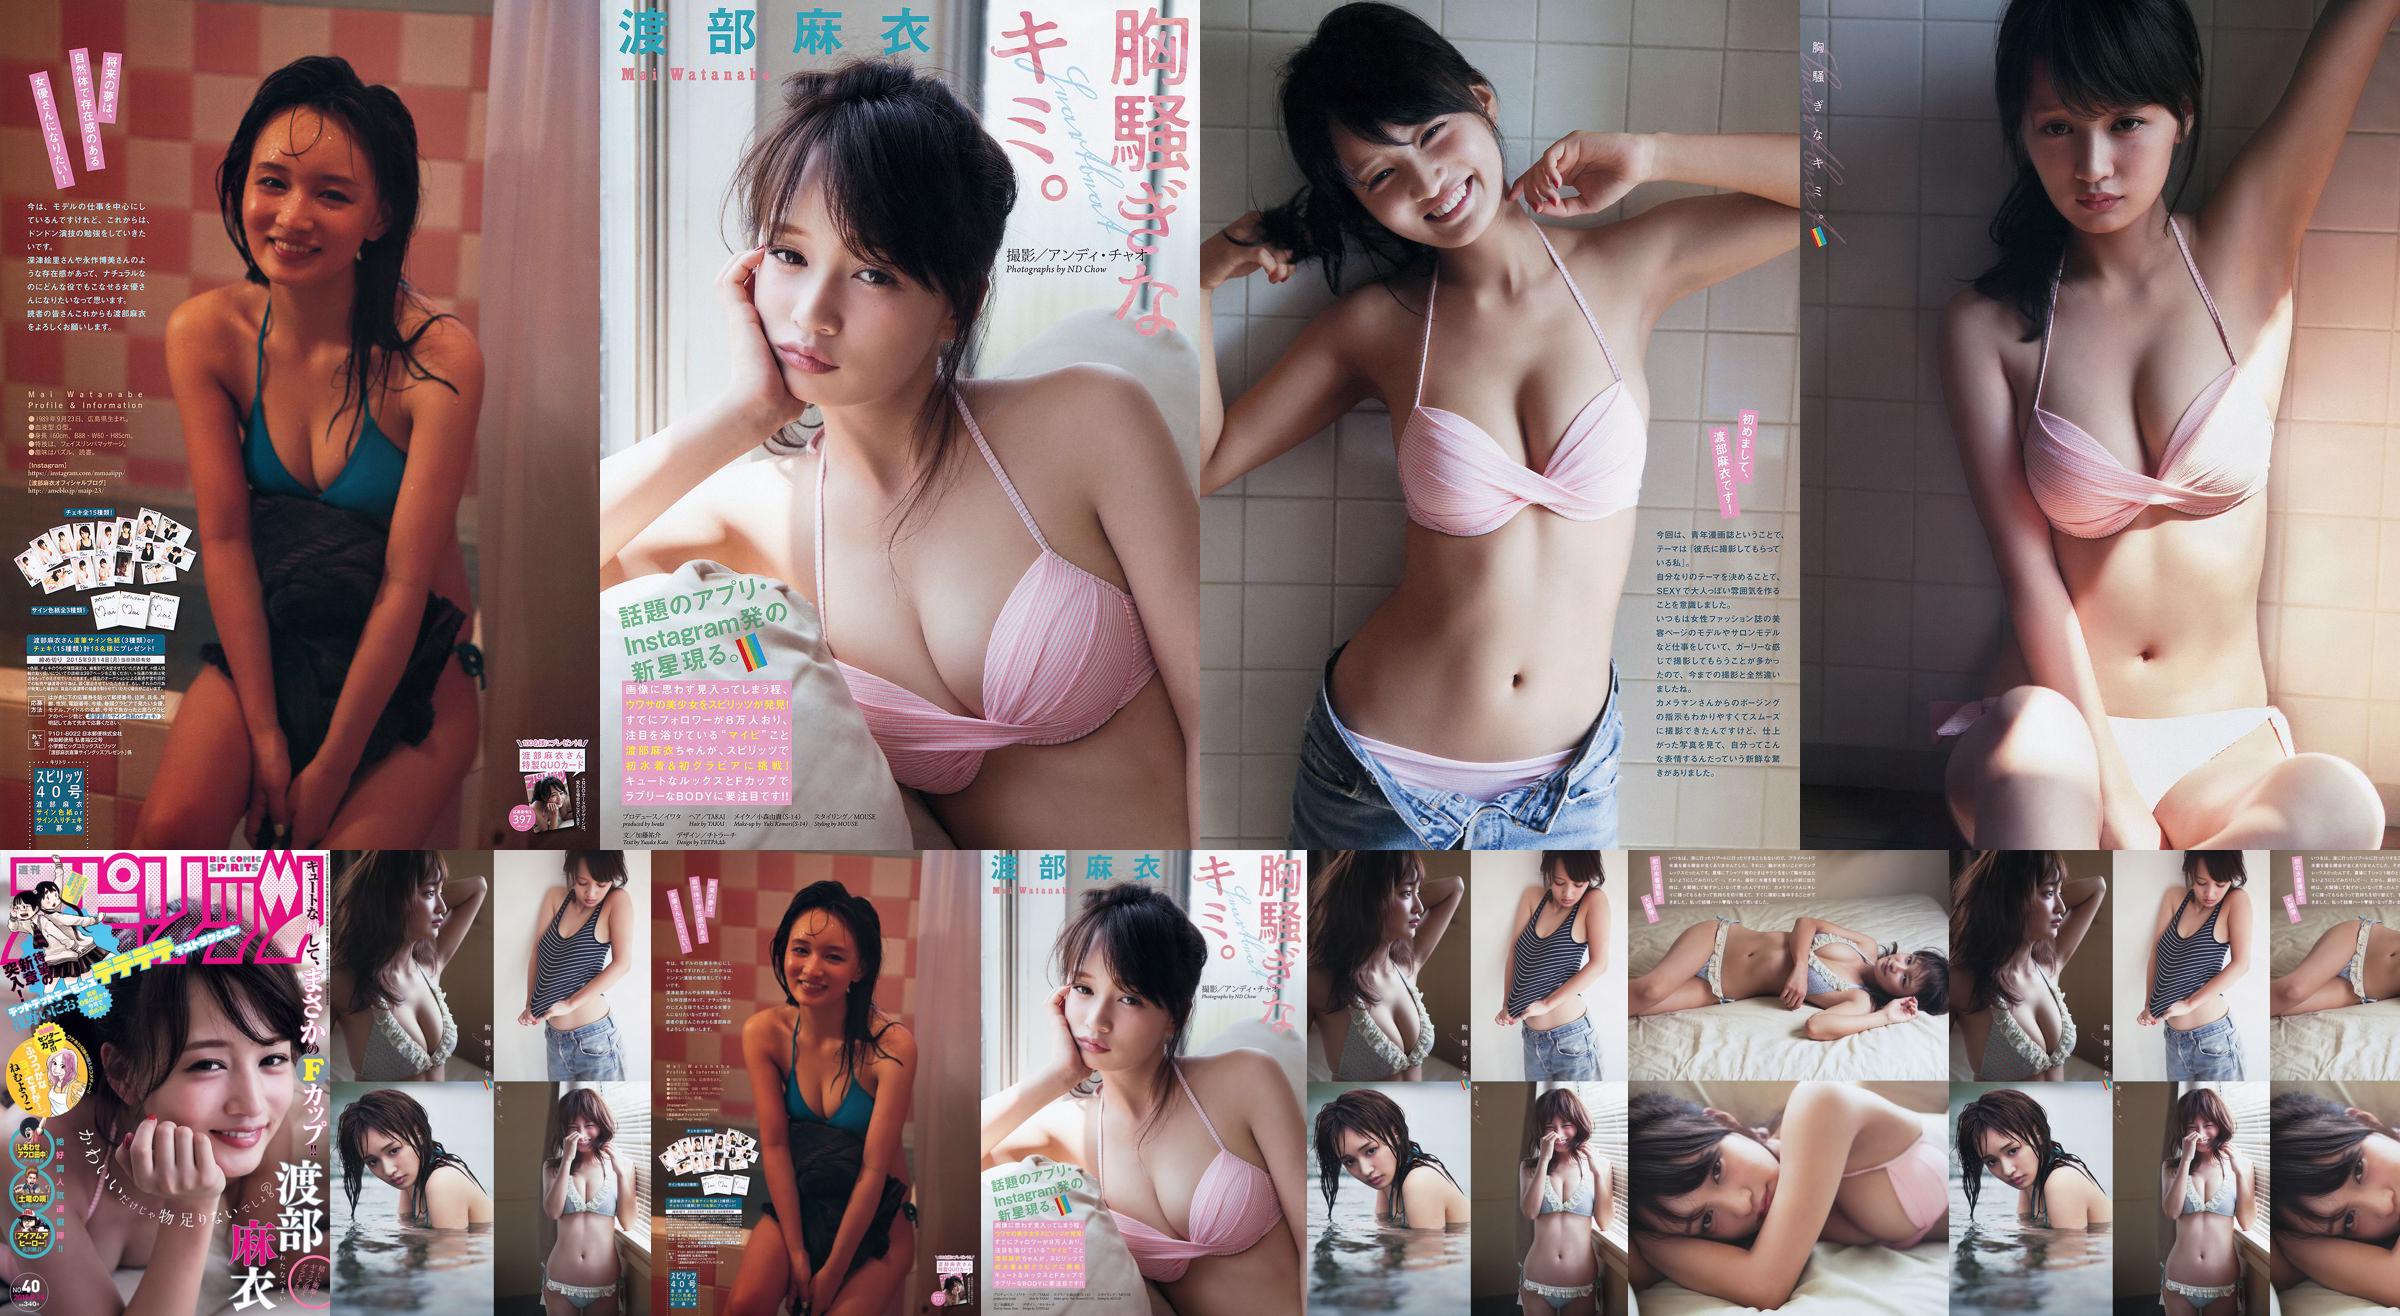 [Weekly Big Comic Spirits] Watanabe Mai 2015 No.40 Photo Magazine No.4436dc Pagina 4